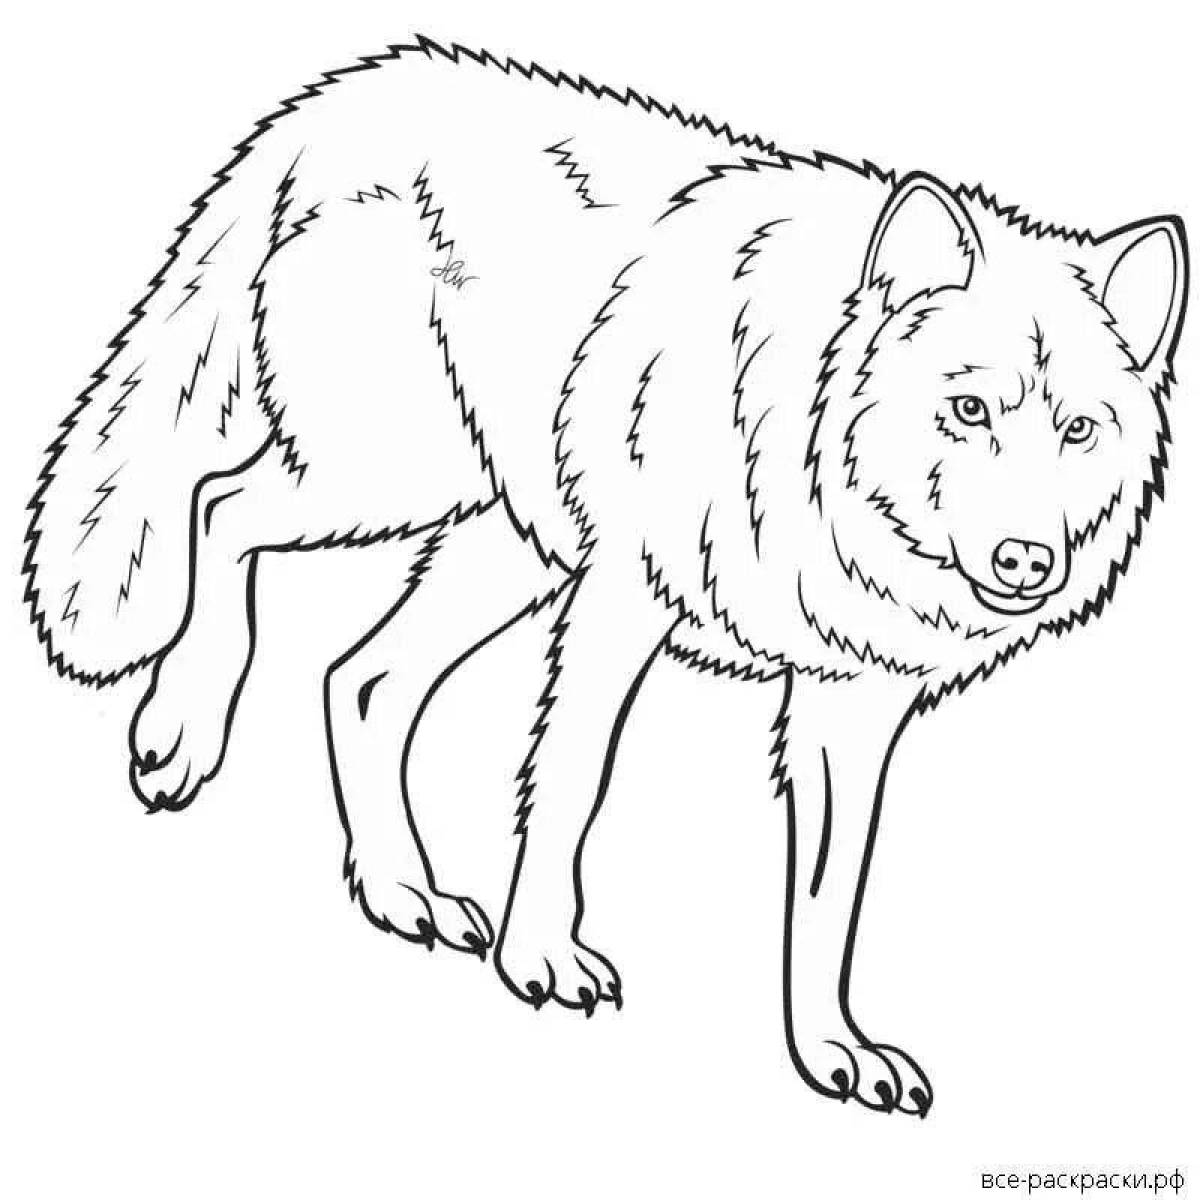 Незабываемая раскраска волк для детей 3-4 лет